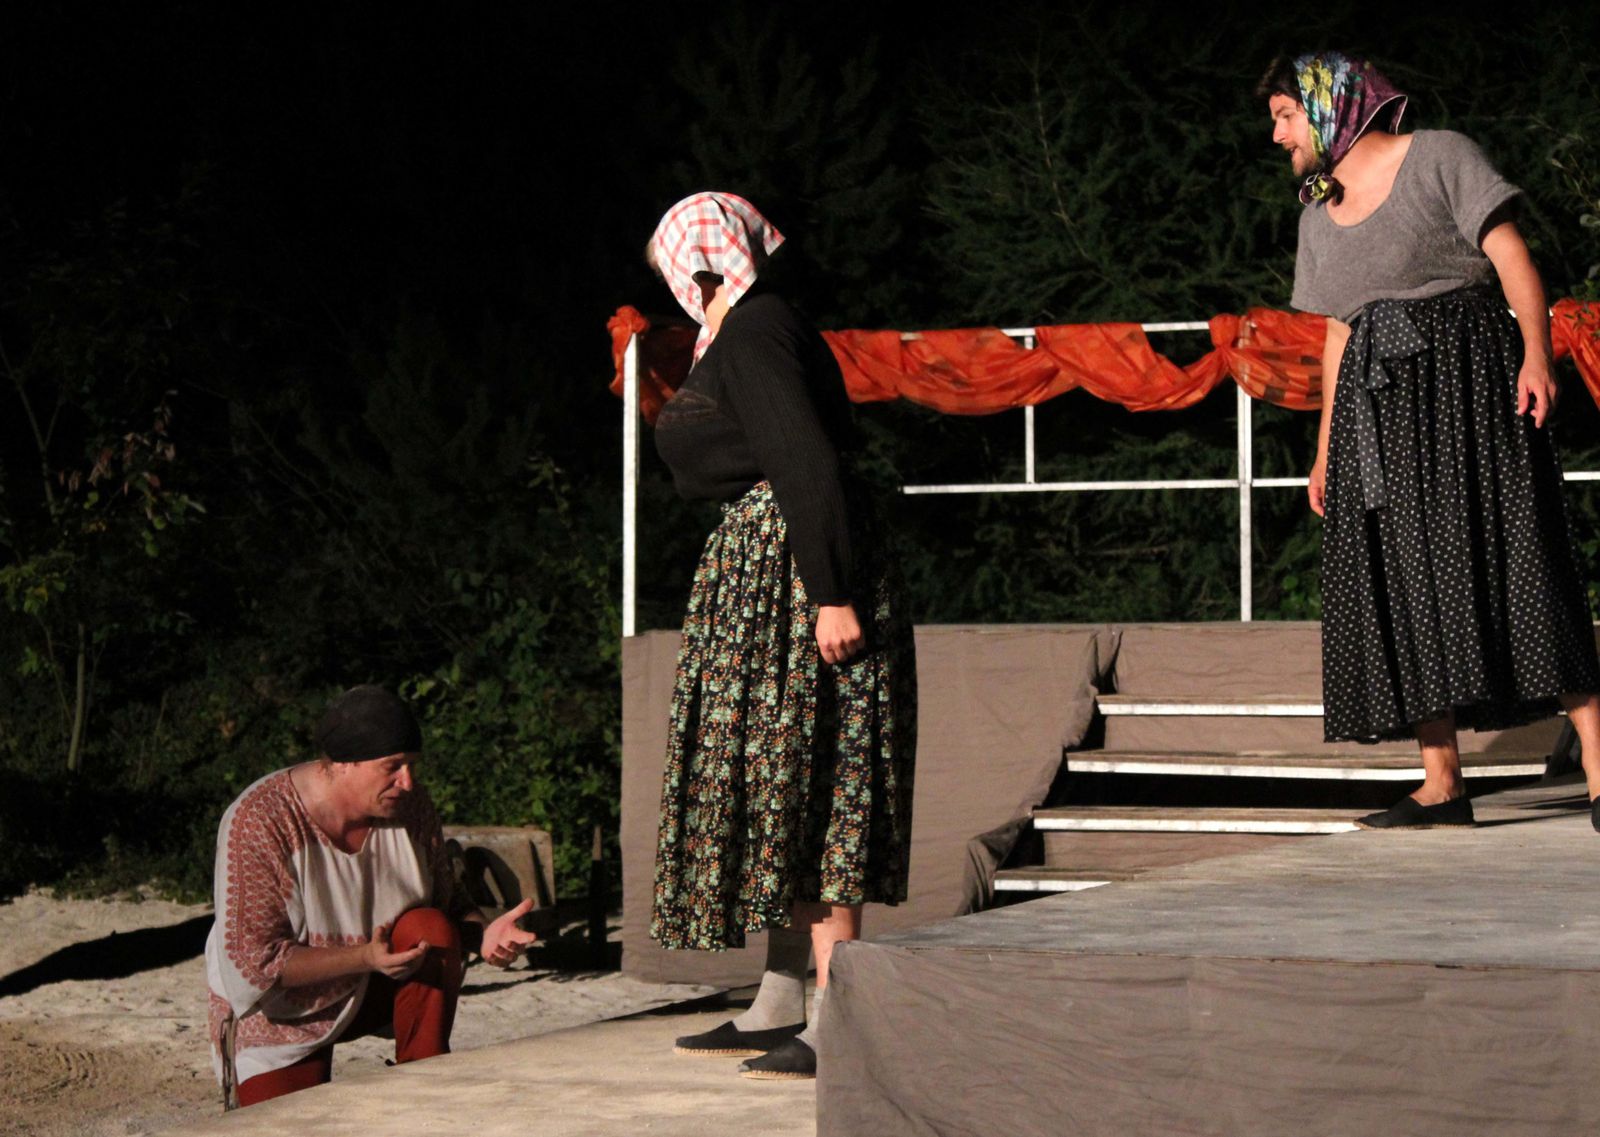 Deuxième acte du spectacle d'été 2011 des Mattagumber.

(photos Gaby Marck - Jacques Saly)